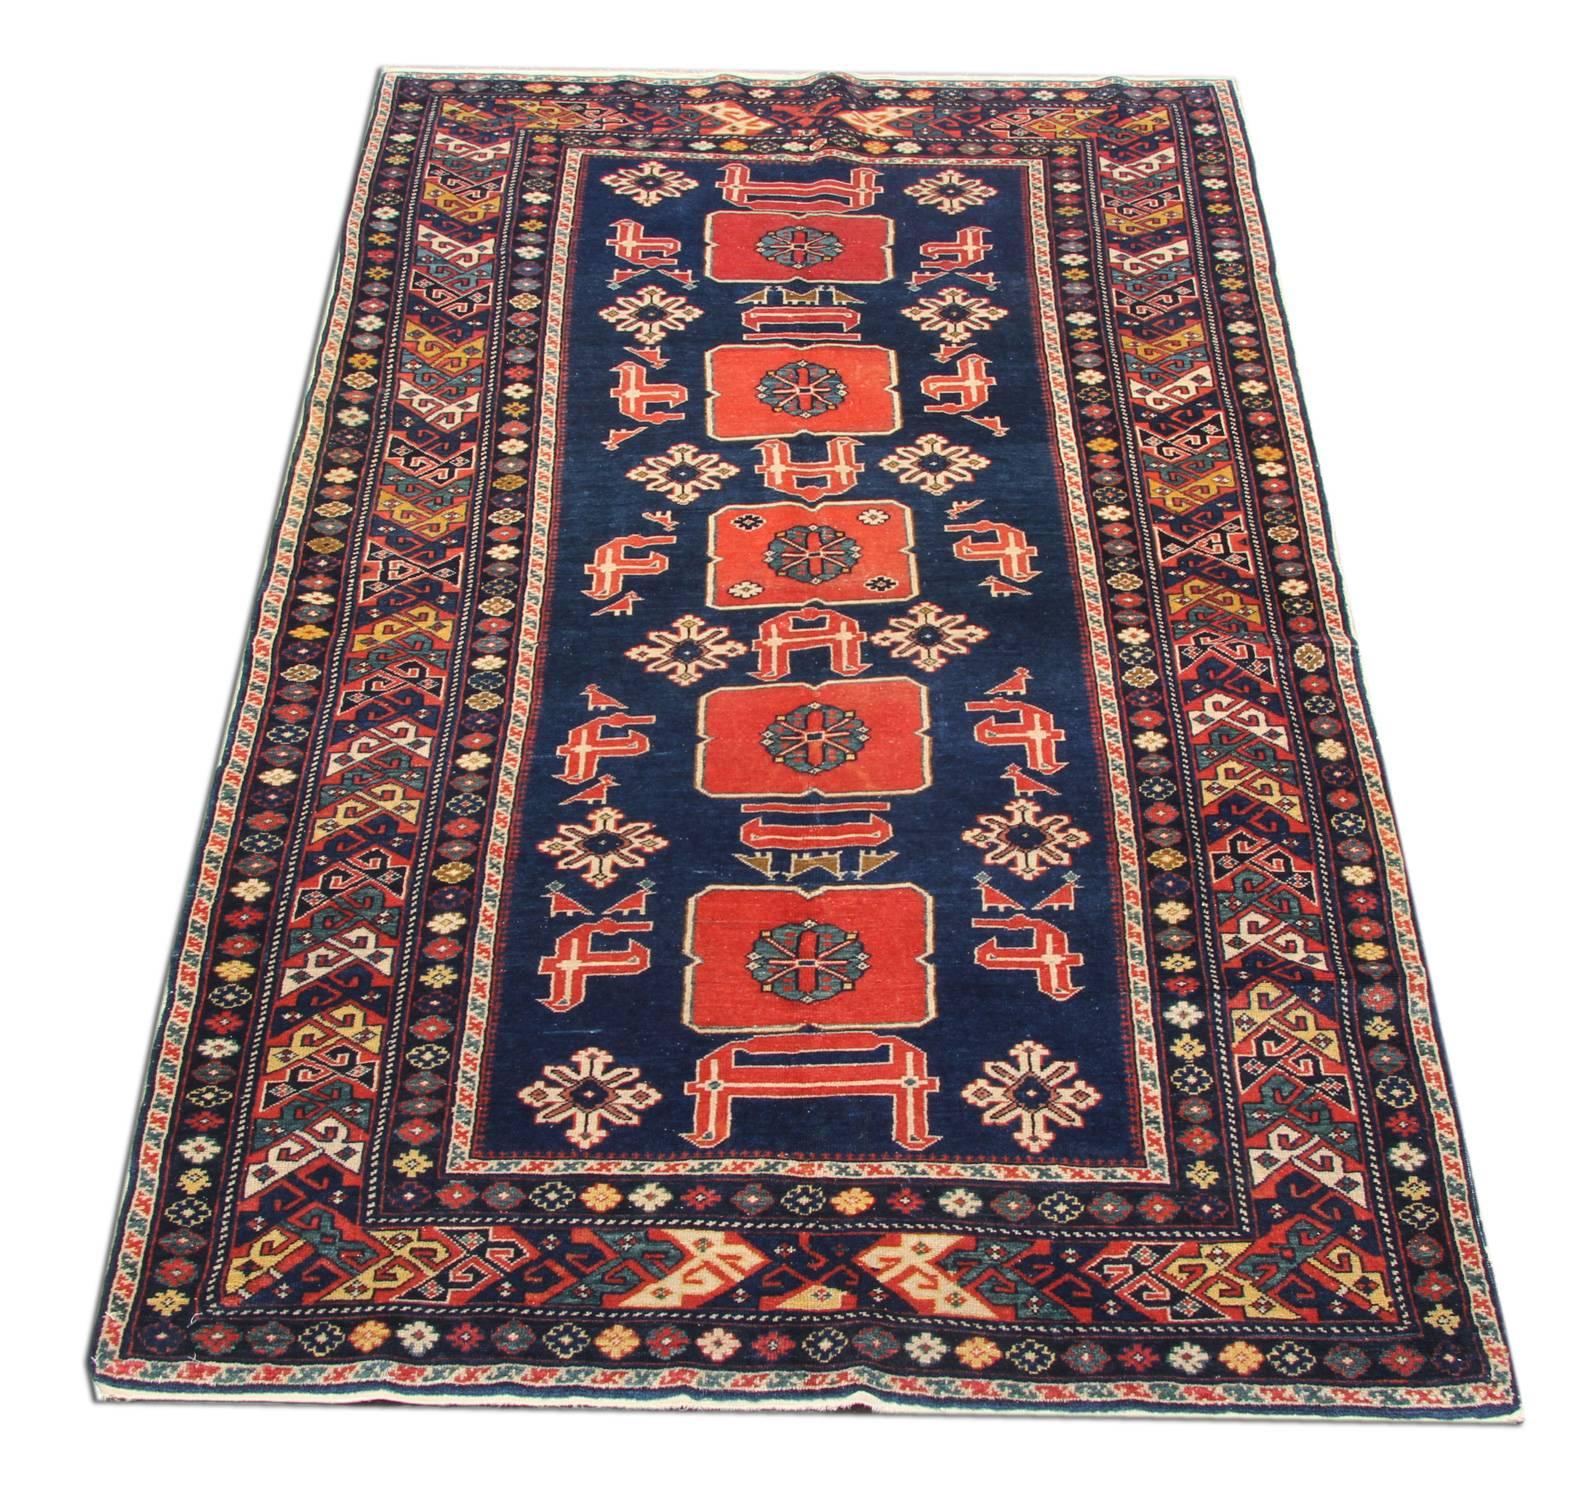 Dieser handgefertigte antike Kaukasus-Teppich ist ein phänomenales und wahrhaft archetypisches Beispiel für regionale Orinetal-Teppiche aus dem aserbaidschanischen Dorf Karakaschly. Diese lokale Variante des Afshan-Musters zeichnet sich durch